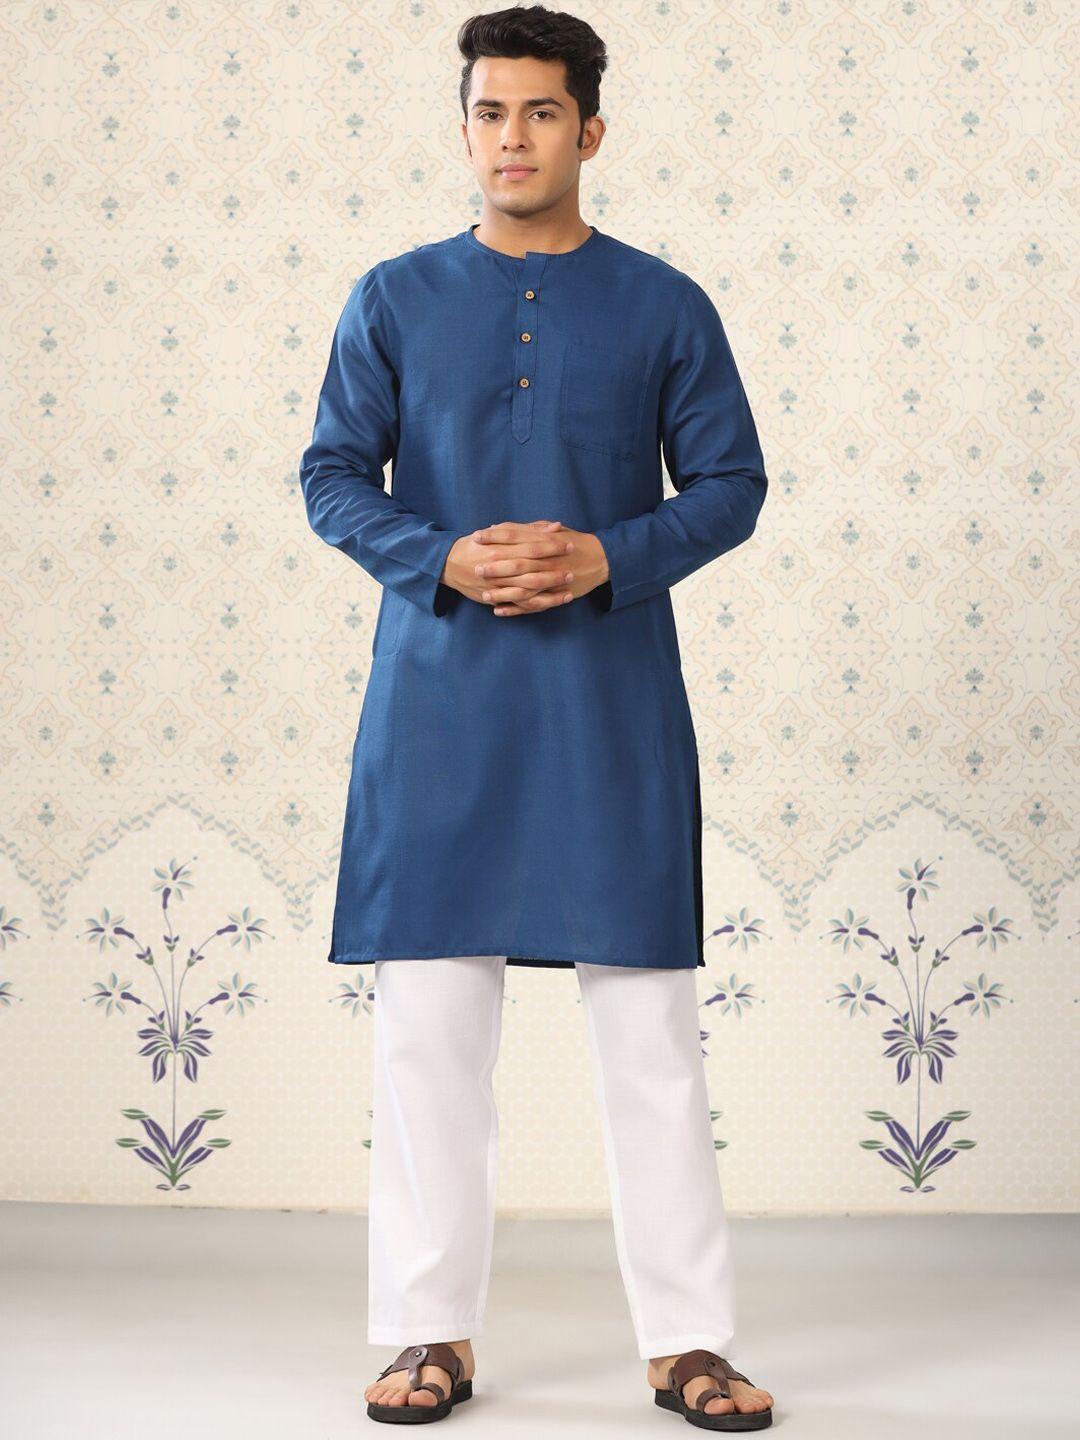 ode by house of pataudi men mandarin collar kurta with pyjamas